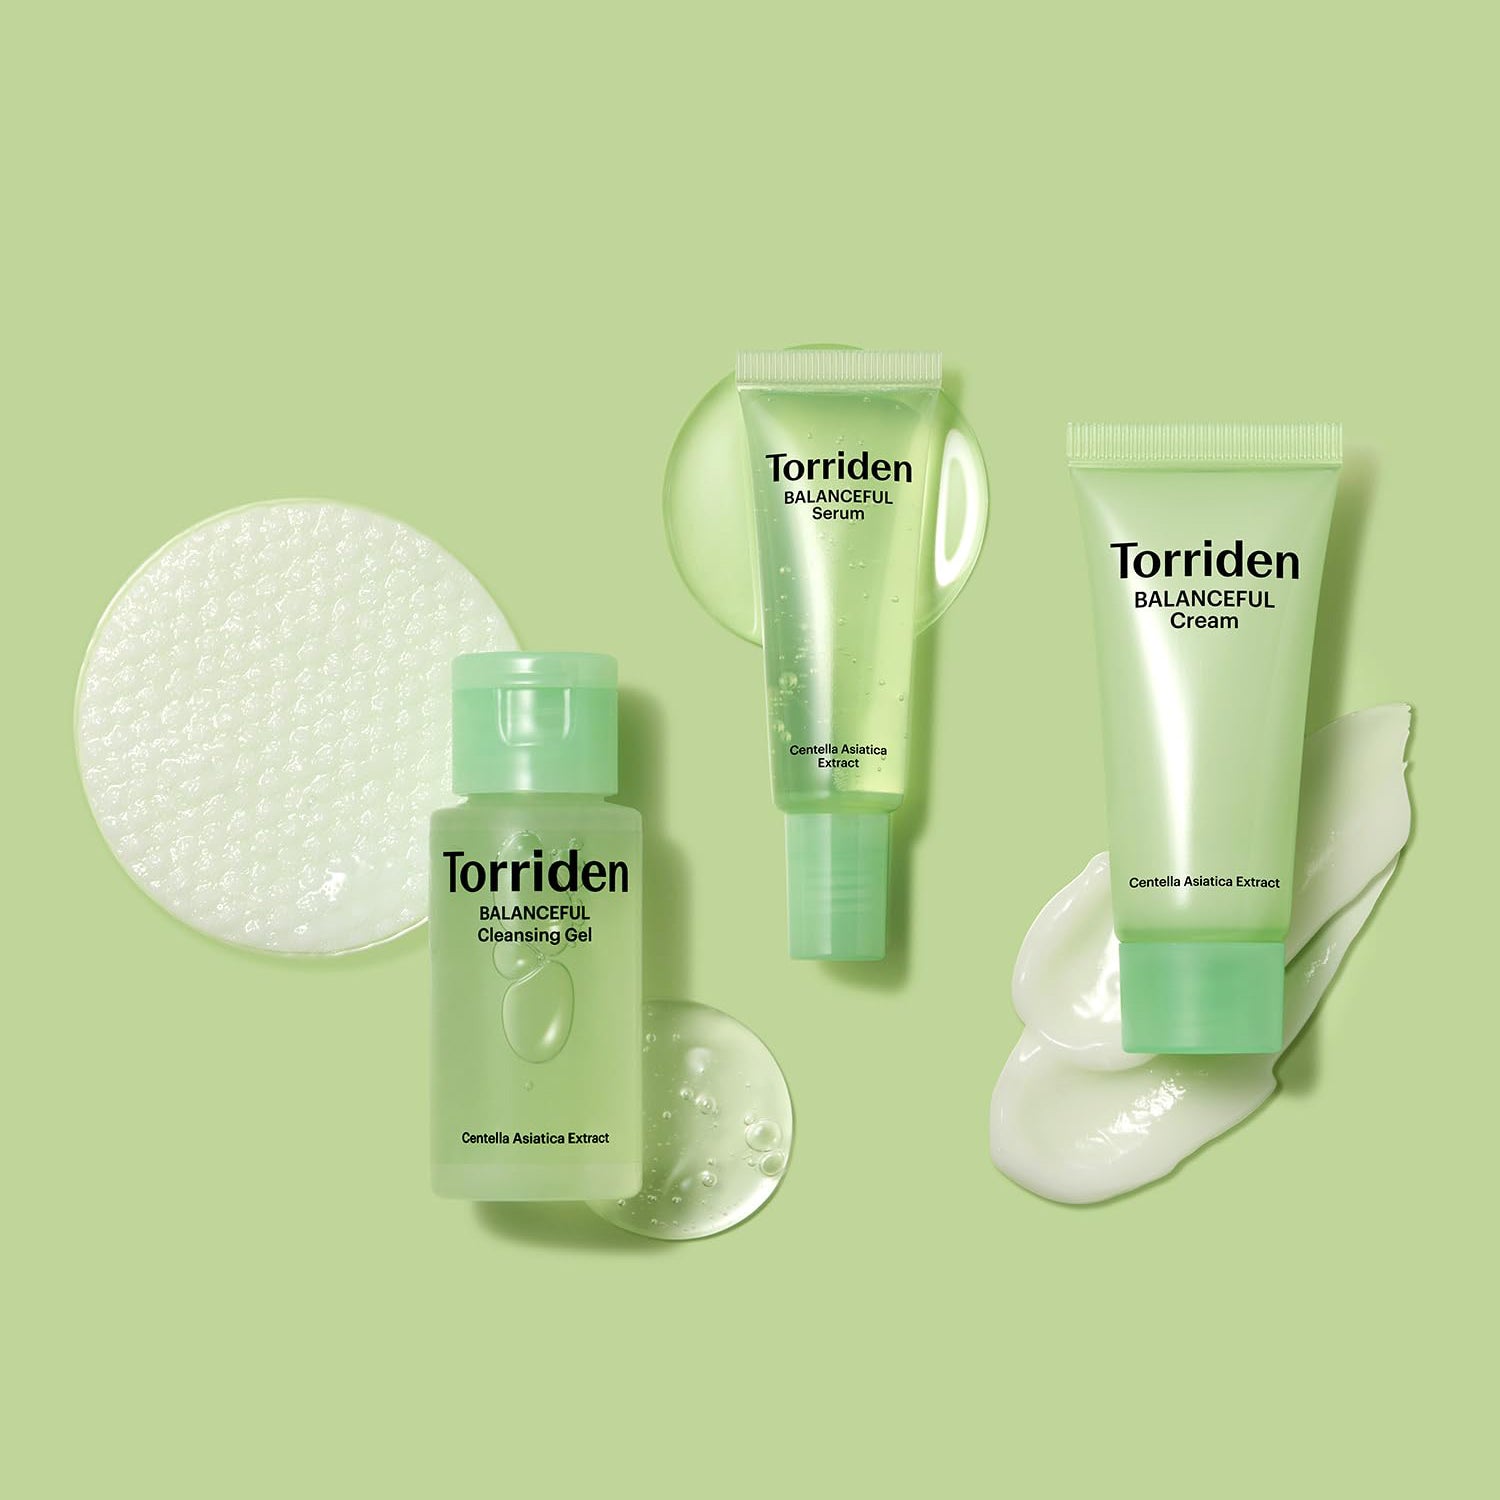 BALANCEFUL Skin Care Trial Kit